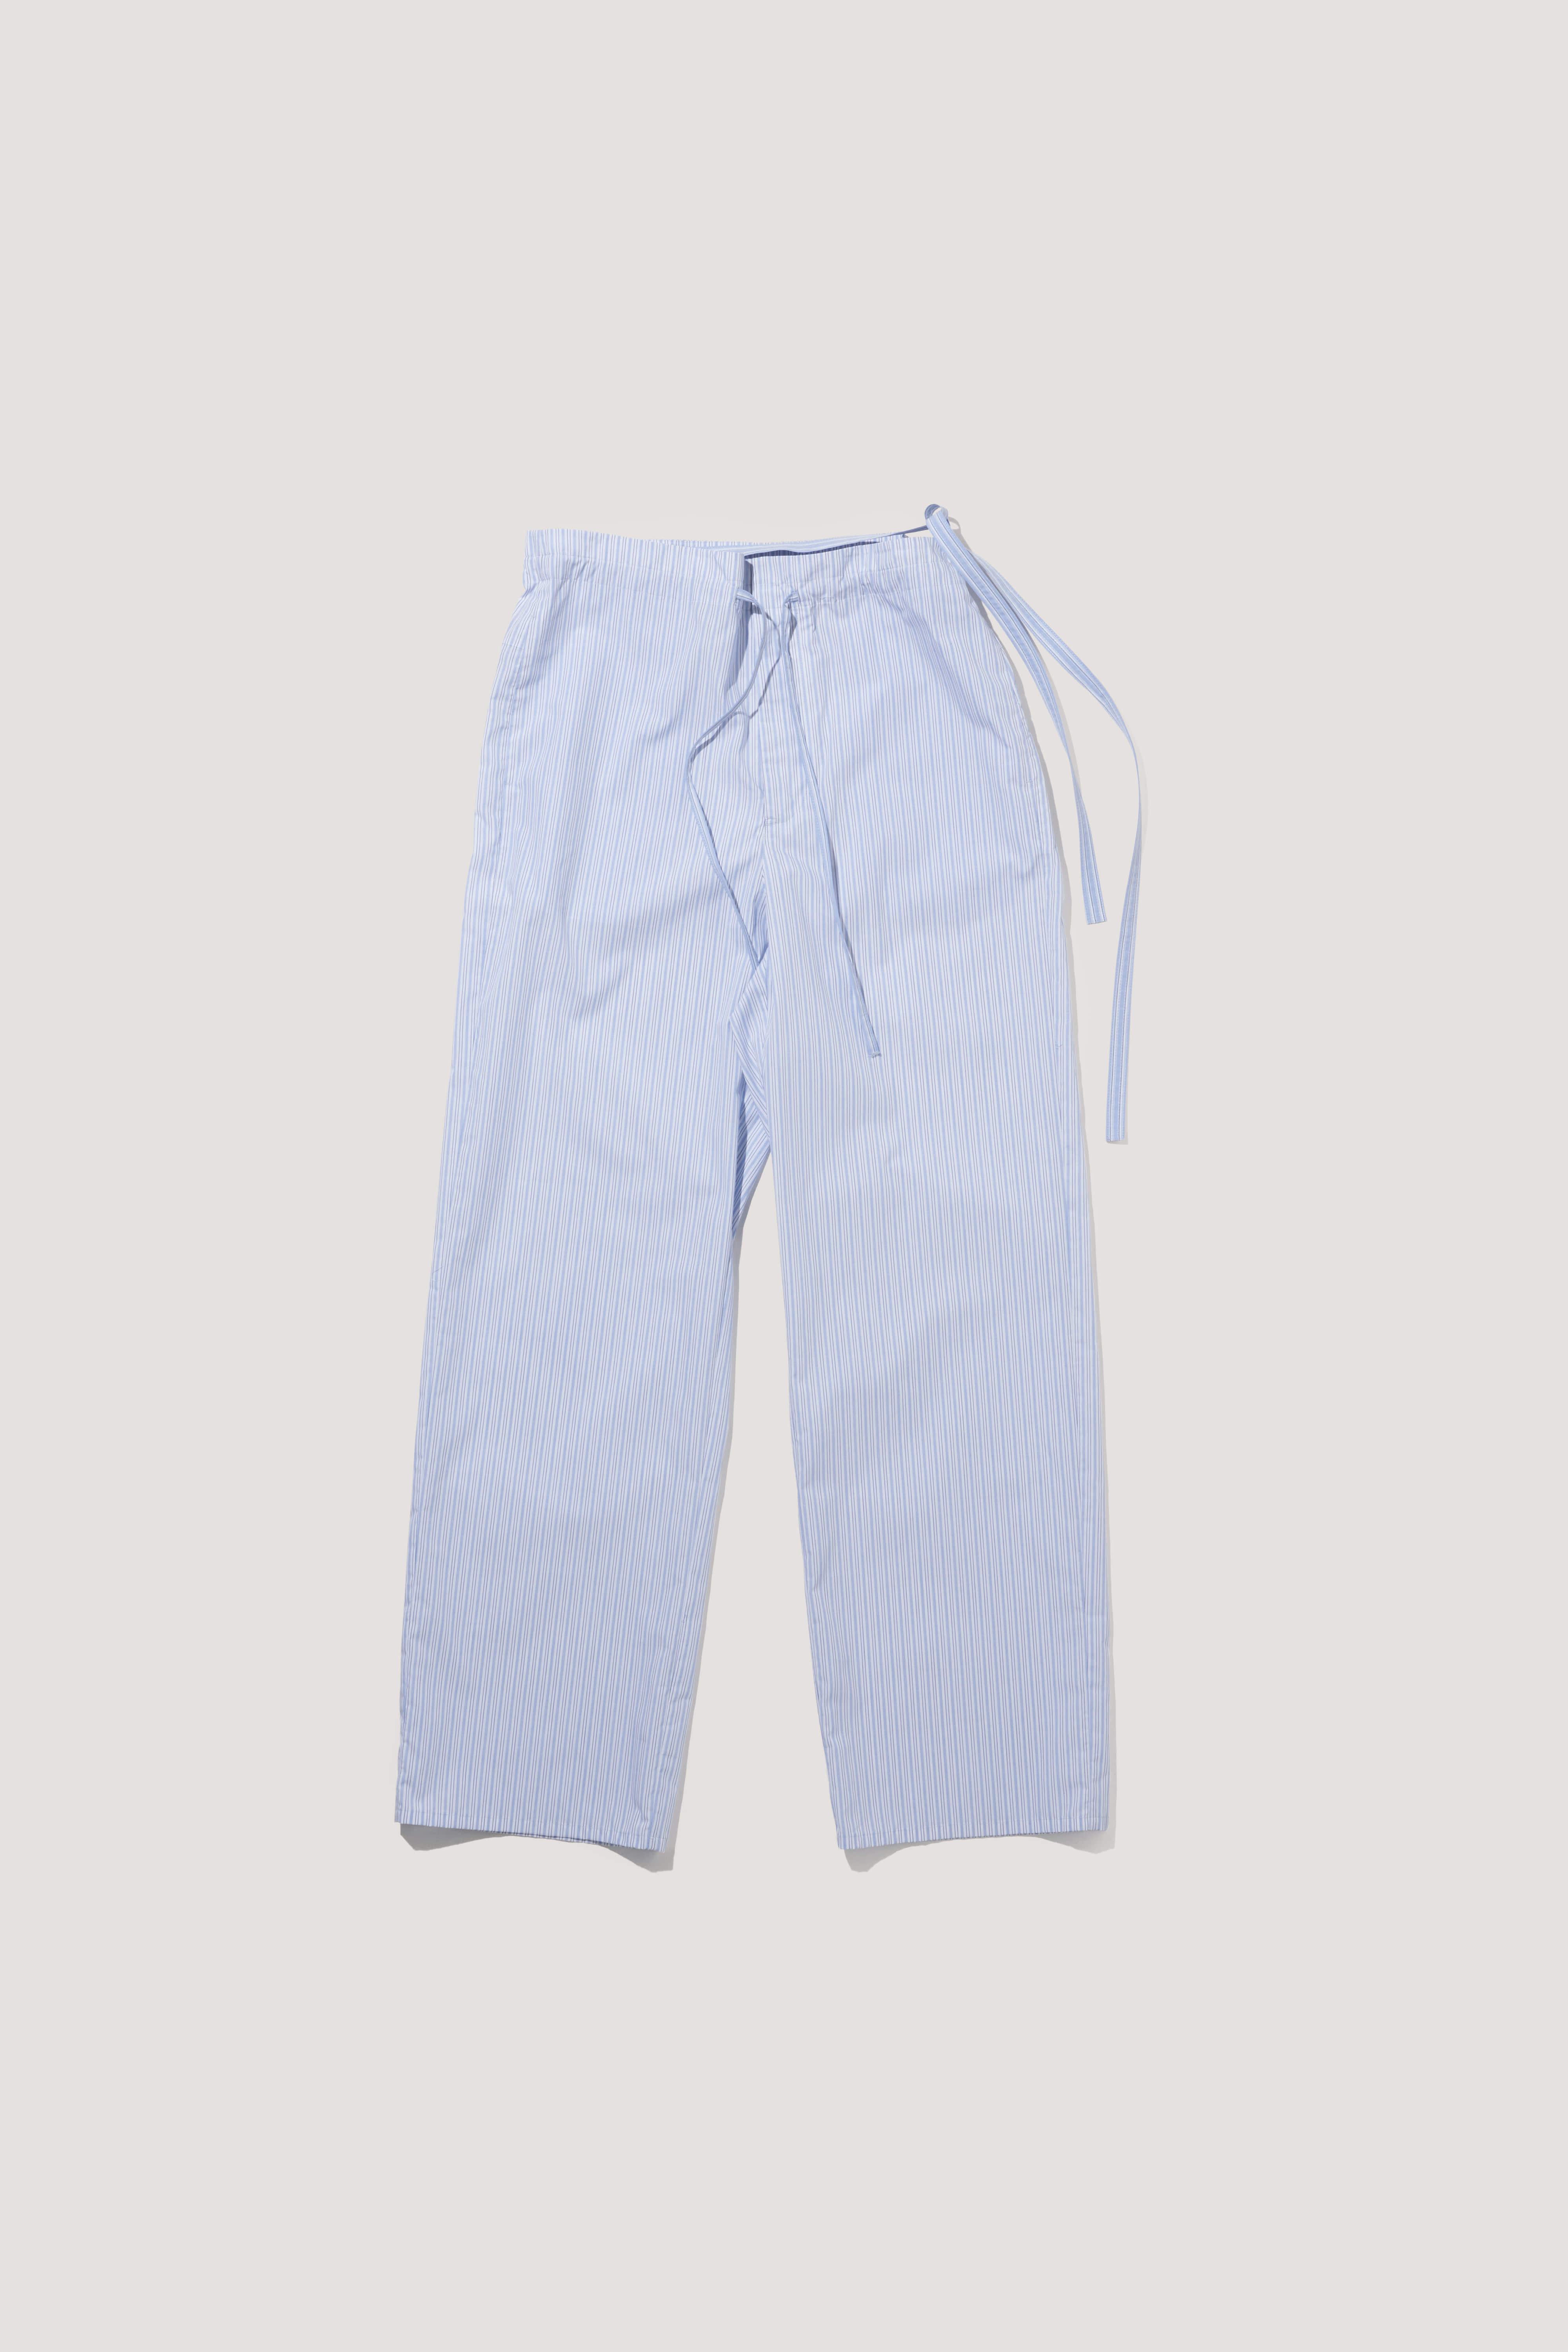 Strap Cotton Pants [stripe]